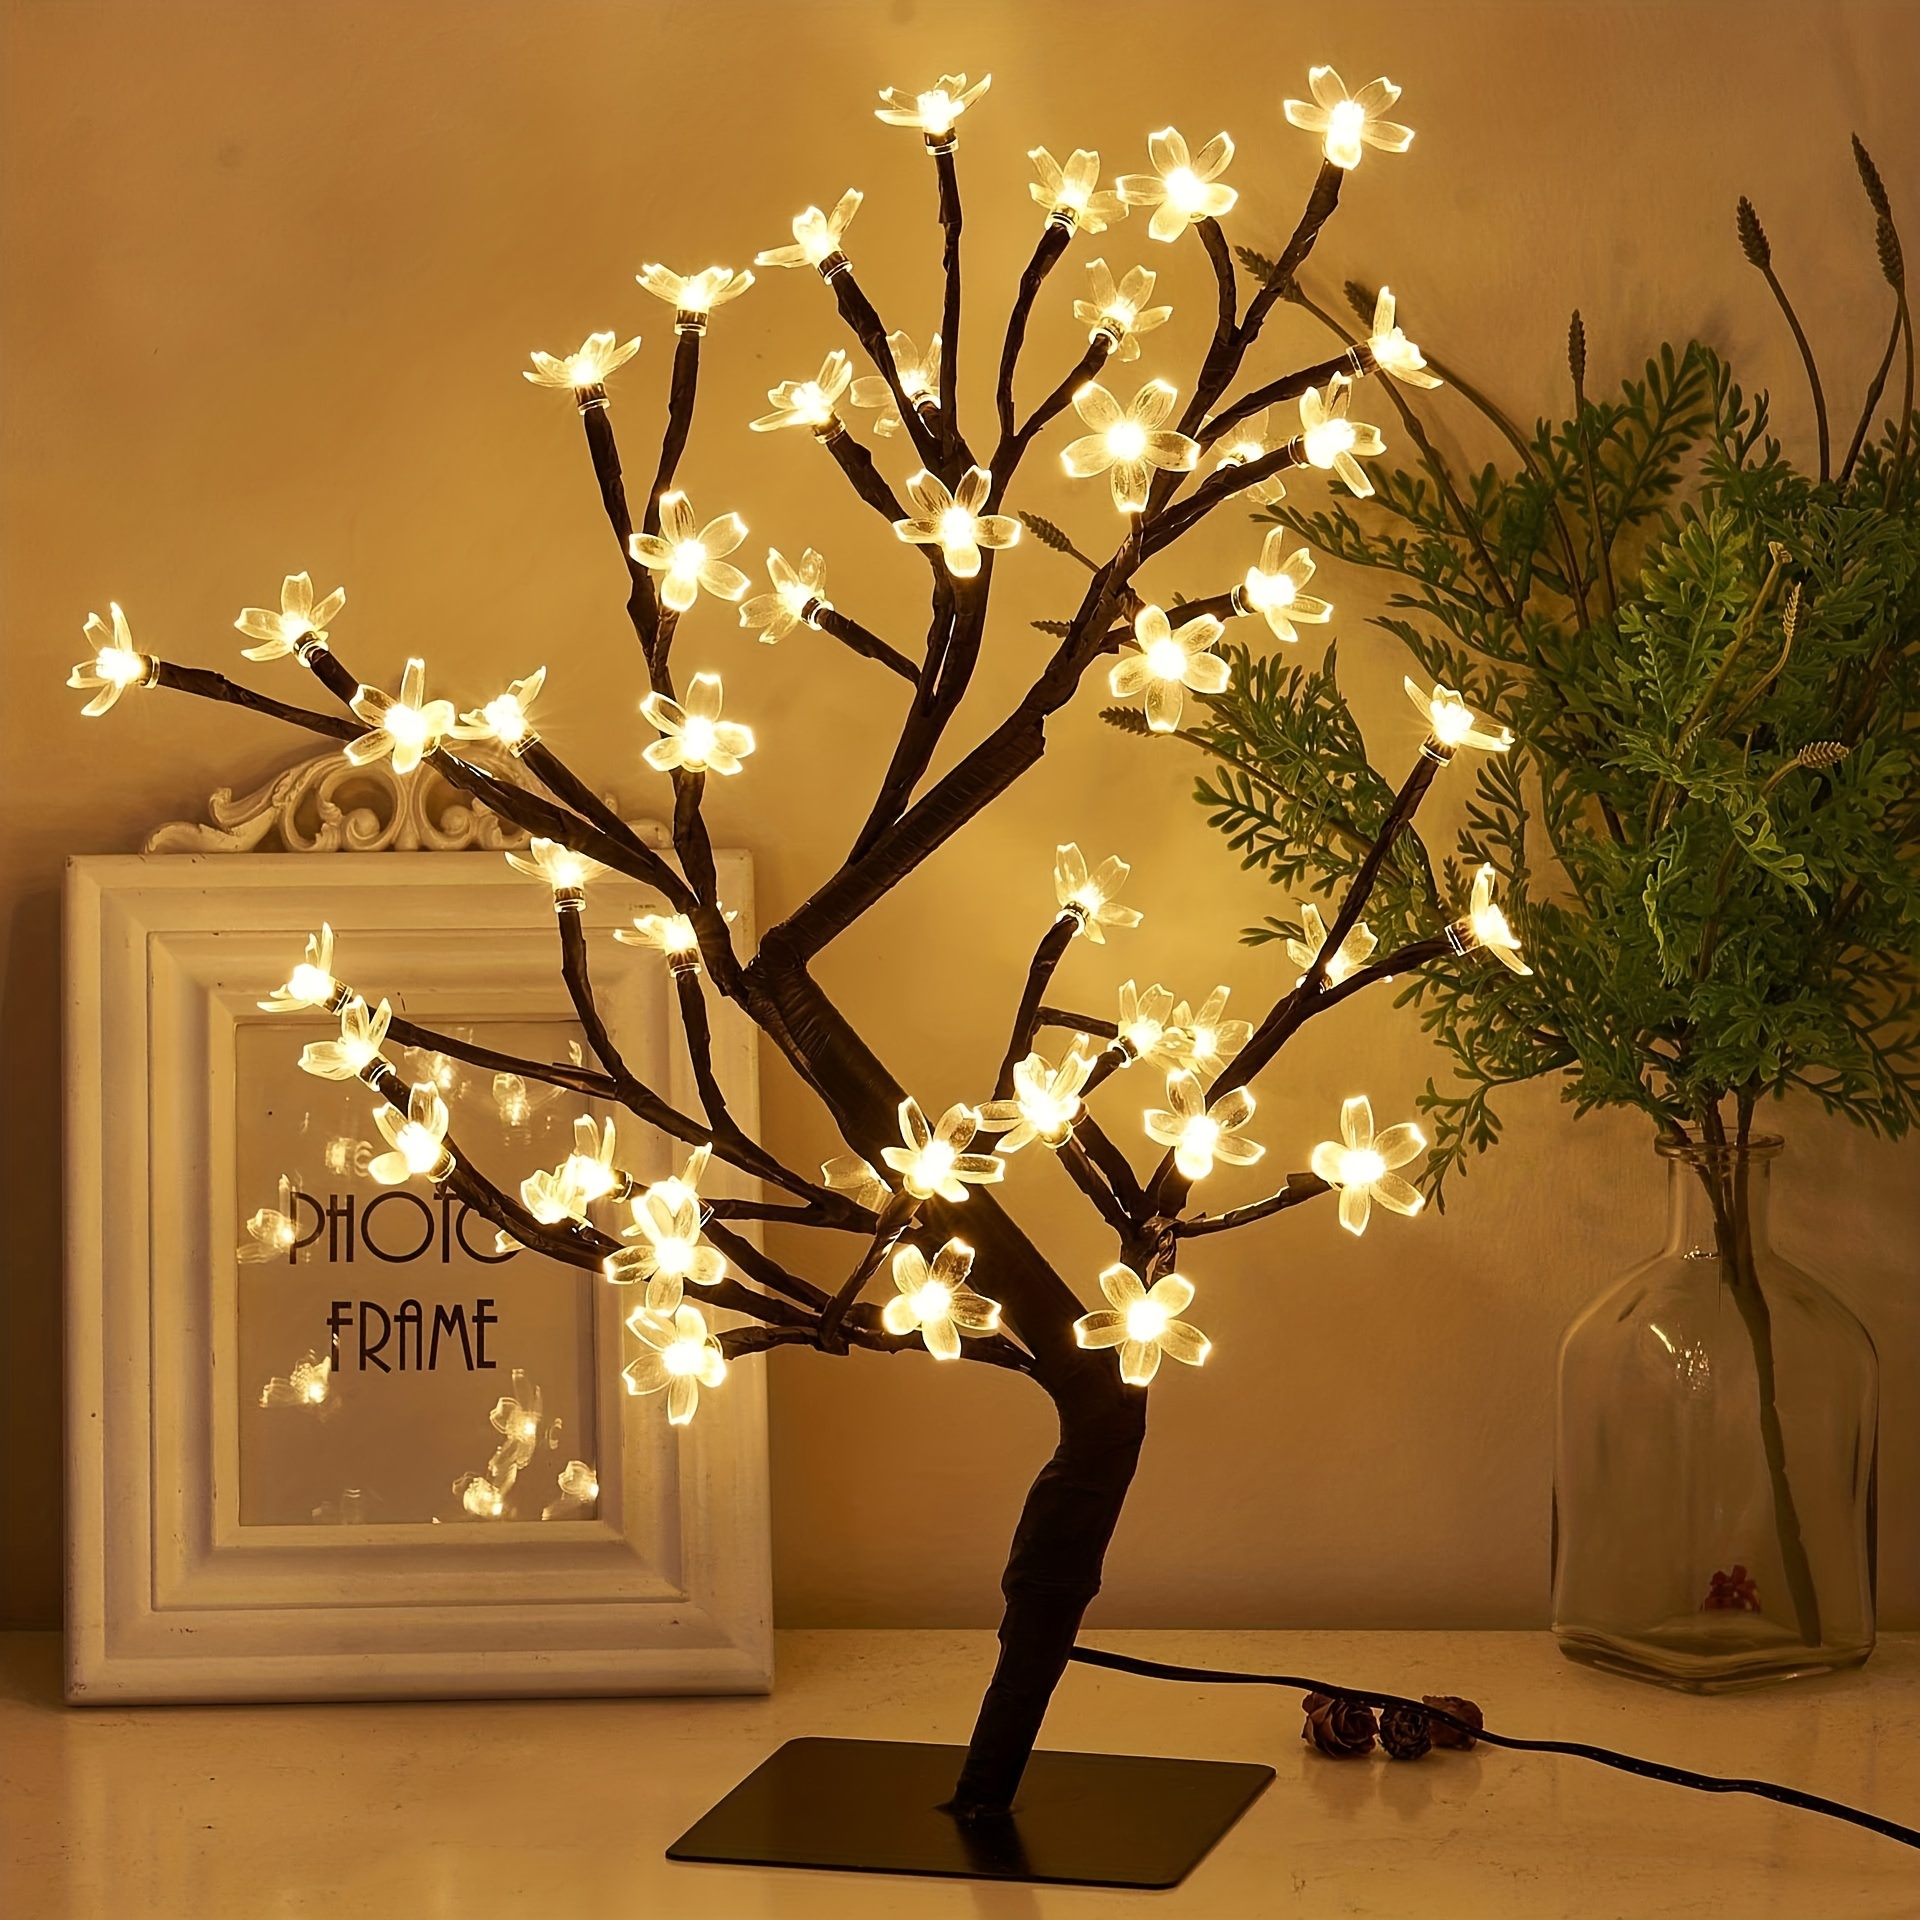 LED Light Bonsai Tree